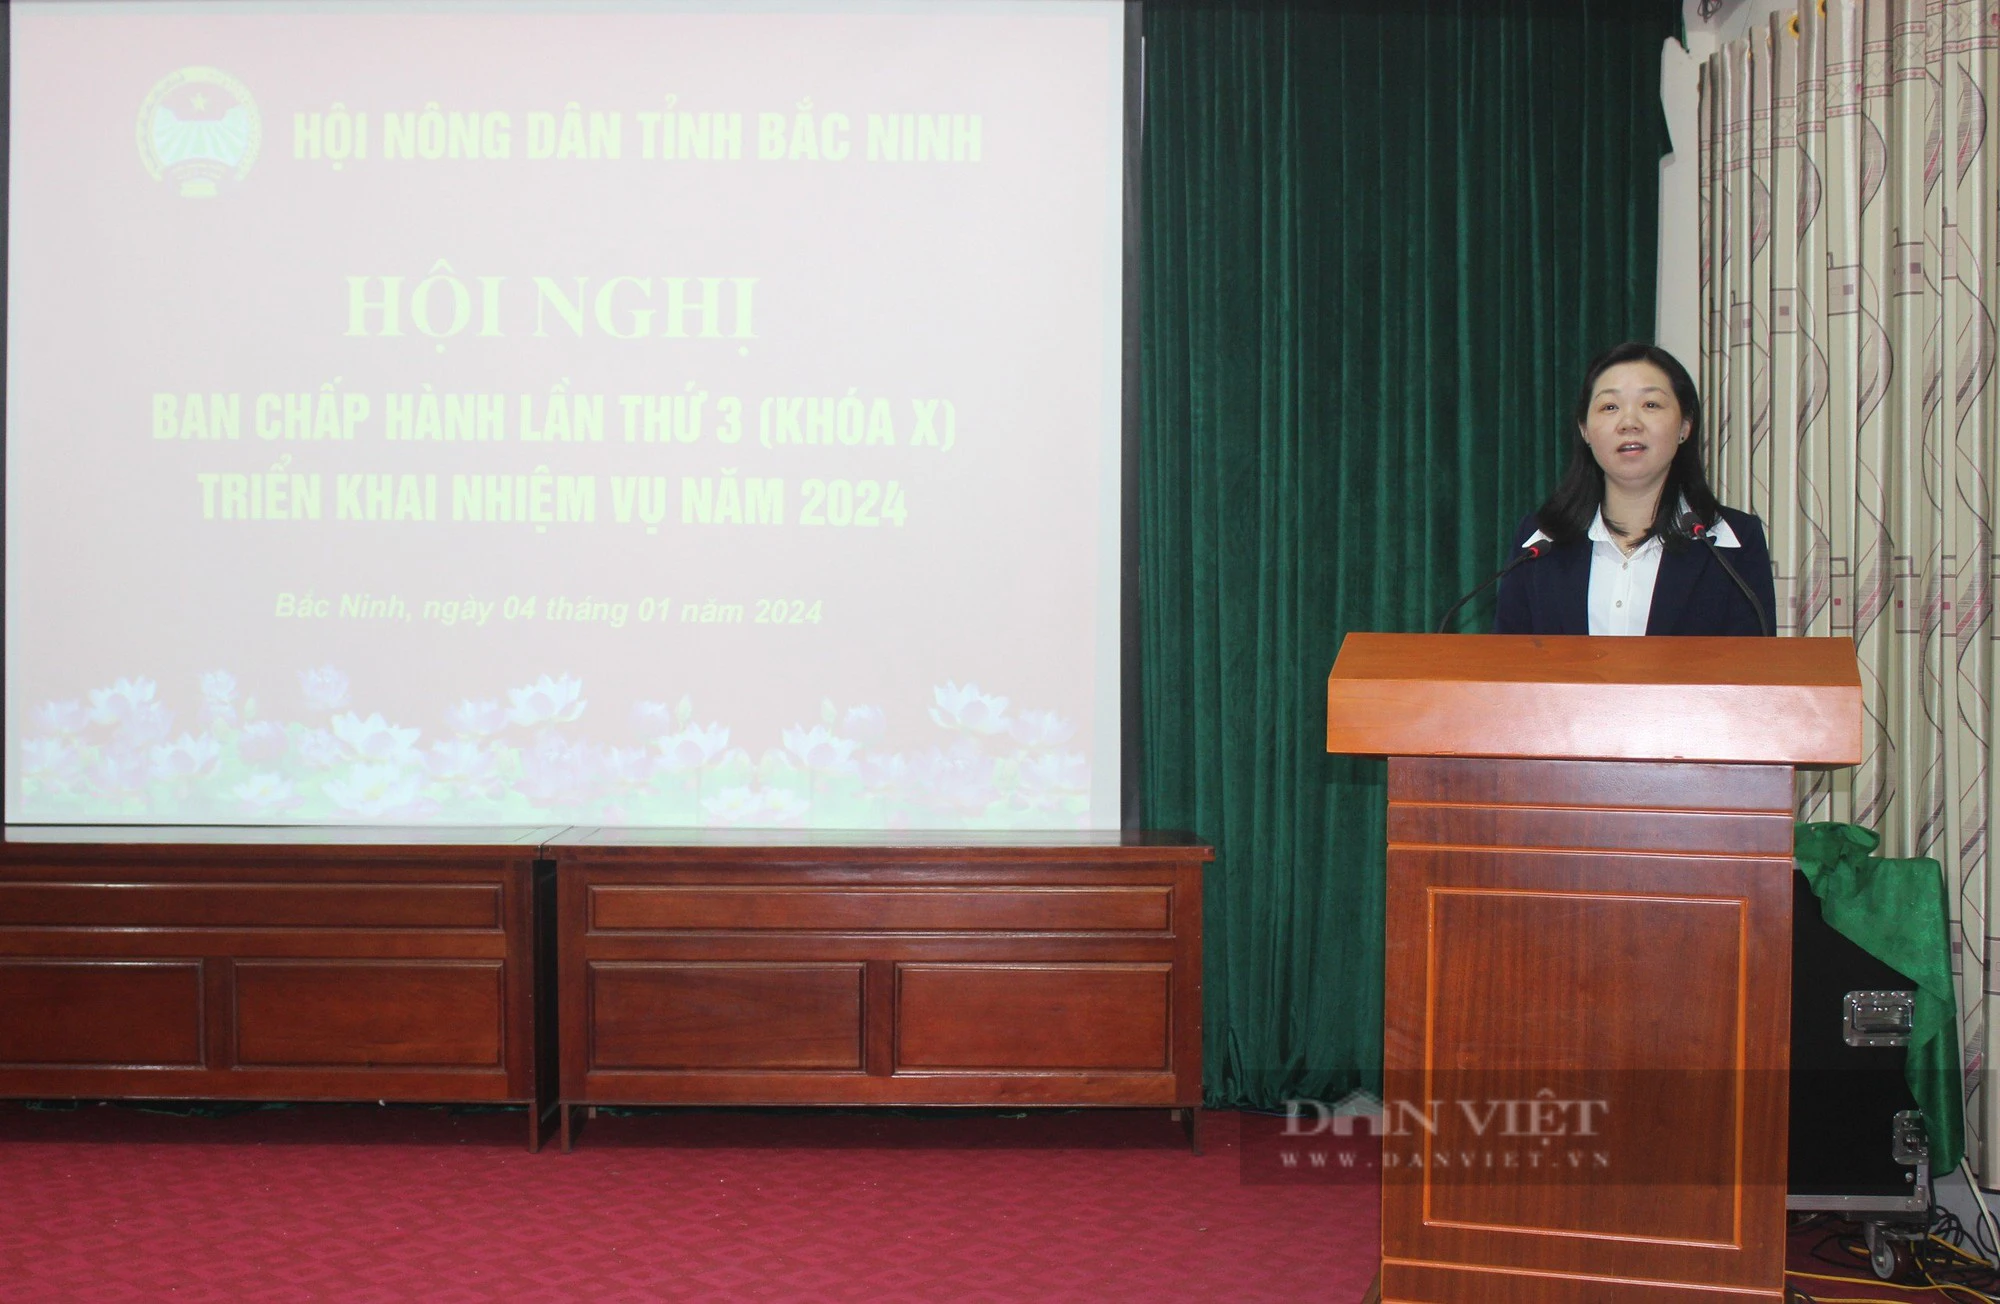 Hội Nông dân tỉnh Bắc Ninh hỗ trợ đưa hộ sản xuất lên sàn thương mại điện tử- Ảnh 1.